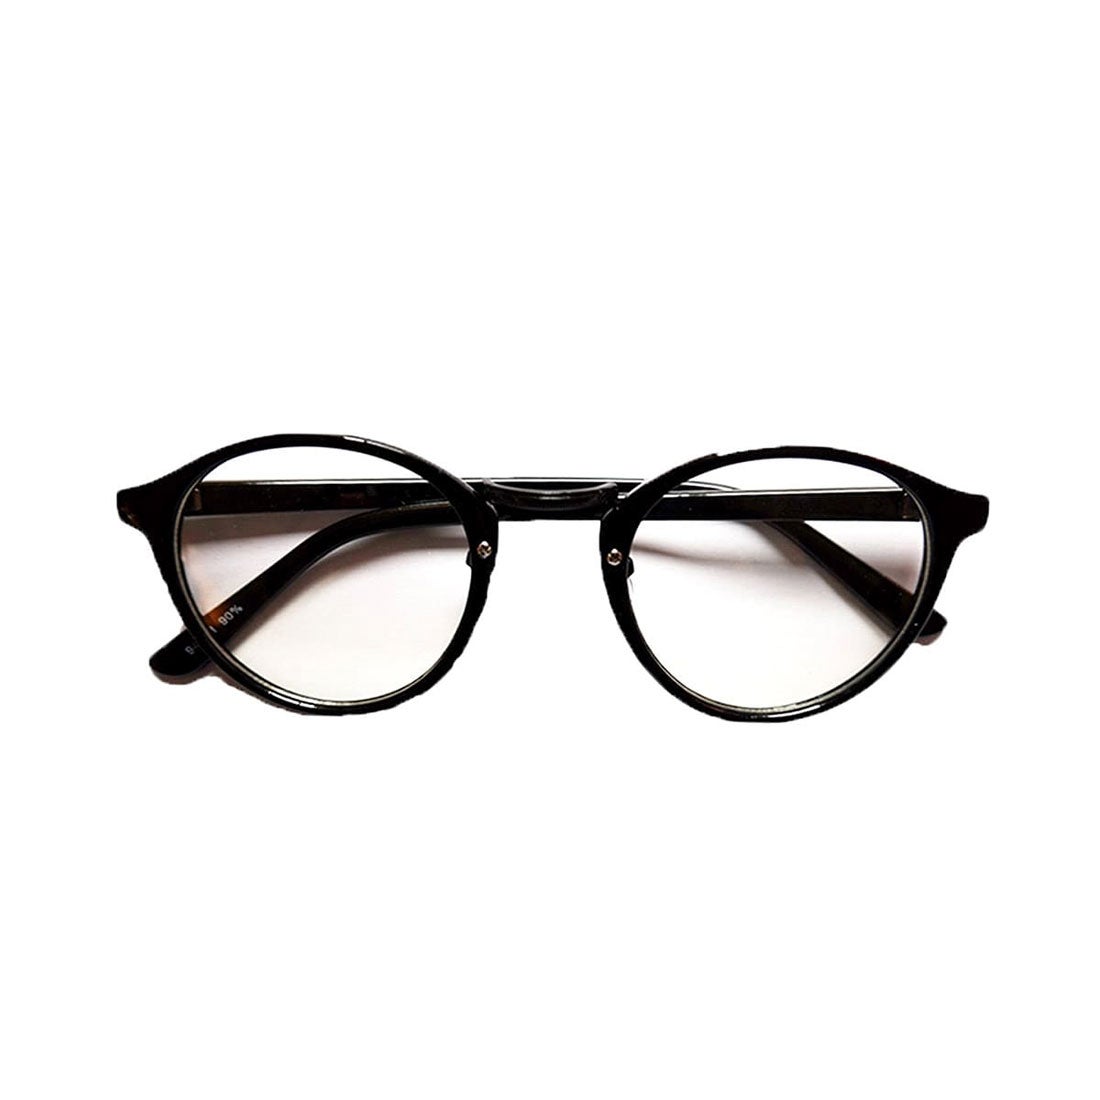 お得クーポン発行中 サングラス 黒フレーム 黒レンズ 伊達 眼鏡 ブラック 紫外線 A4